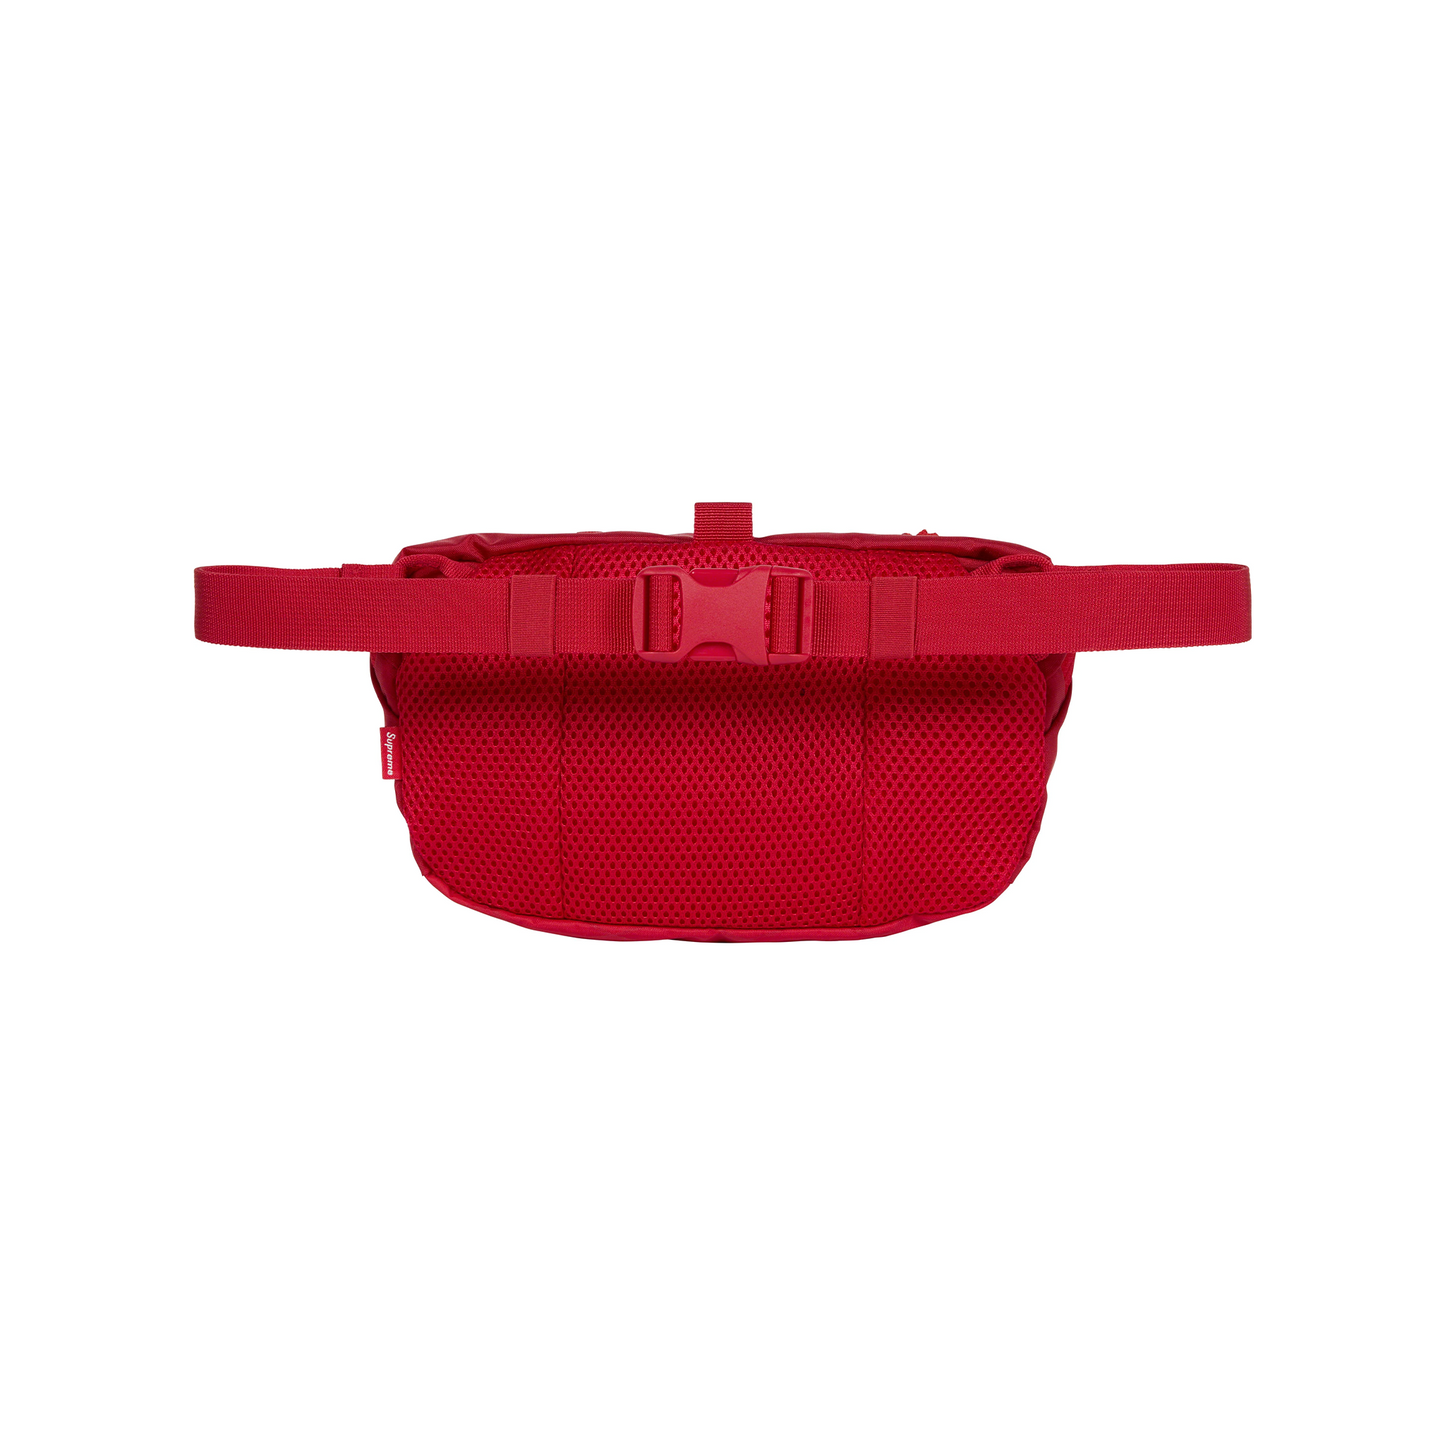 Supreme Waist Bag Red (FW23)